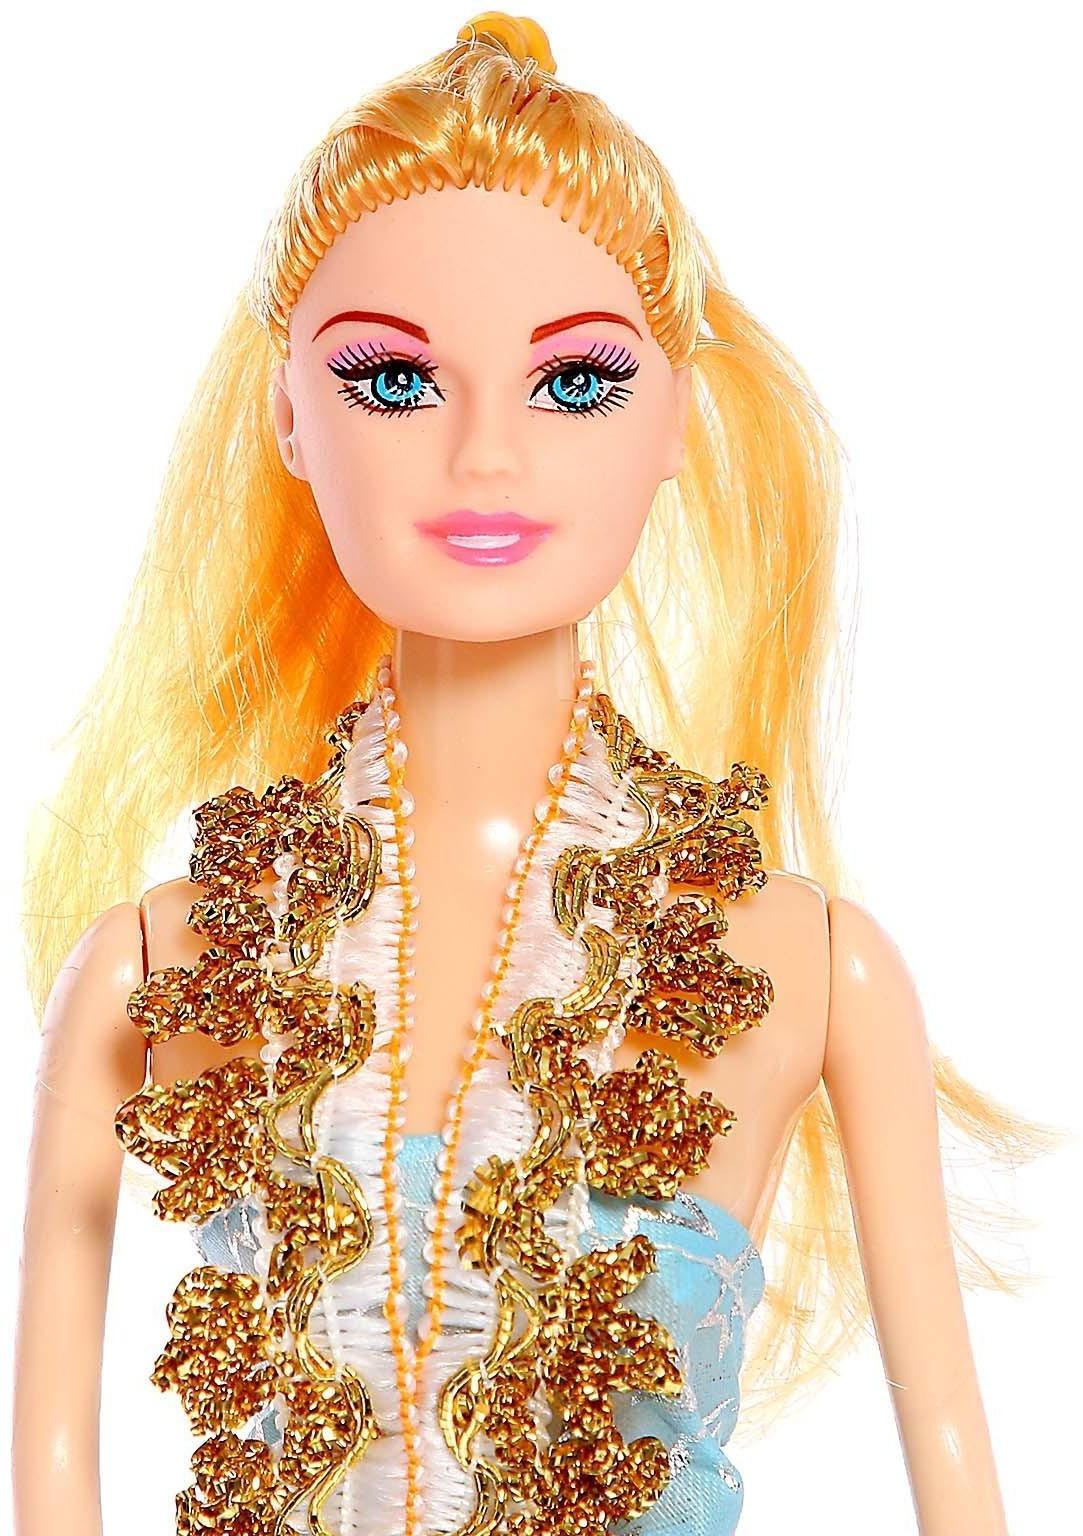 Кукла-модель «Нелли» с набором платьев, МИКС